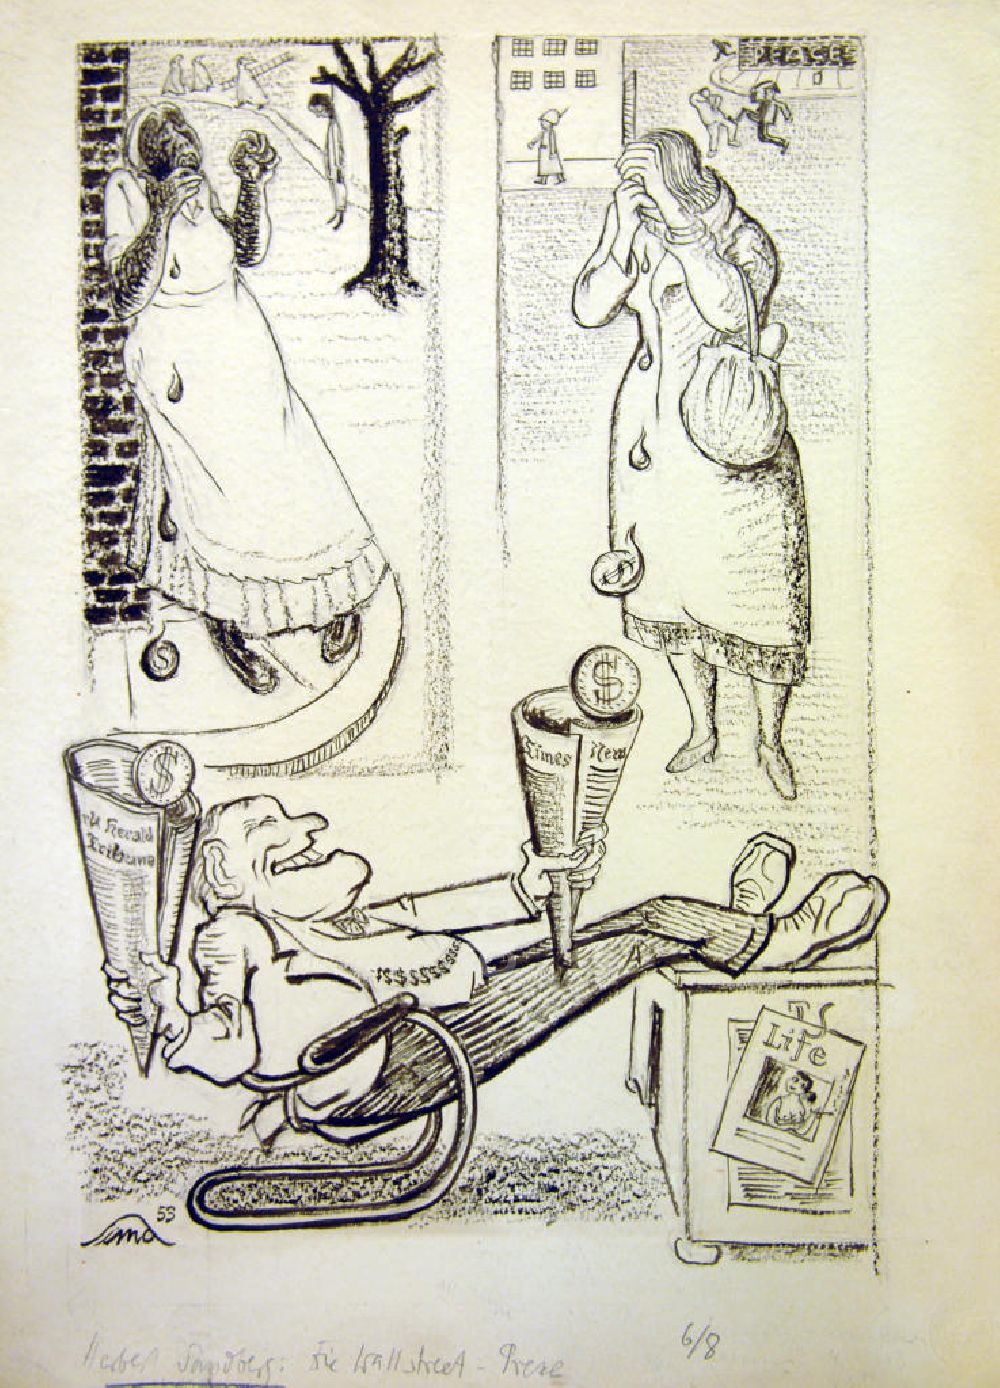 DDR-Bildarchiv: Berlin - Zeichnung von Herbert Sandberg Die Wallstreet-Presse/schwarze Tränen aus dem Jahr 1953